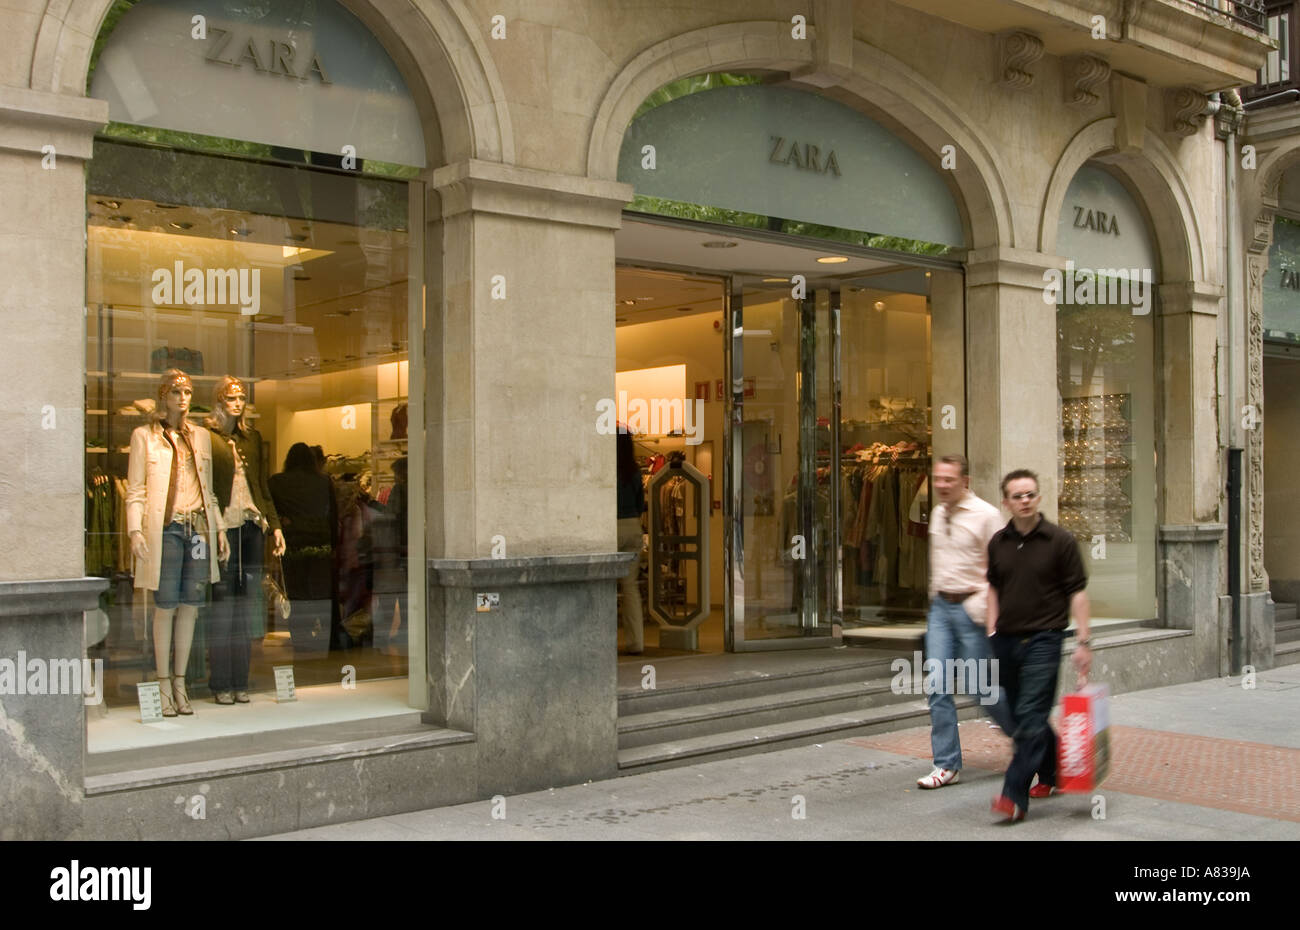 España, Bizkaia, Bilbao, Vista de una tienda Zara en una concurrida calle  comercial Fotografía de stock - Alamy